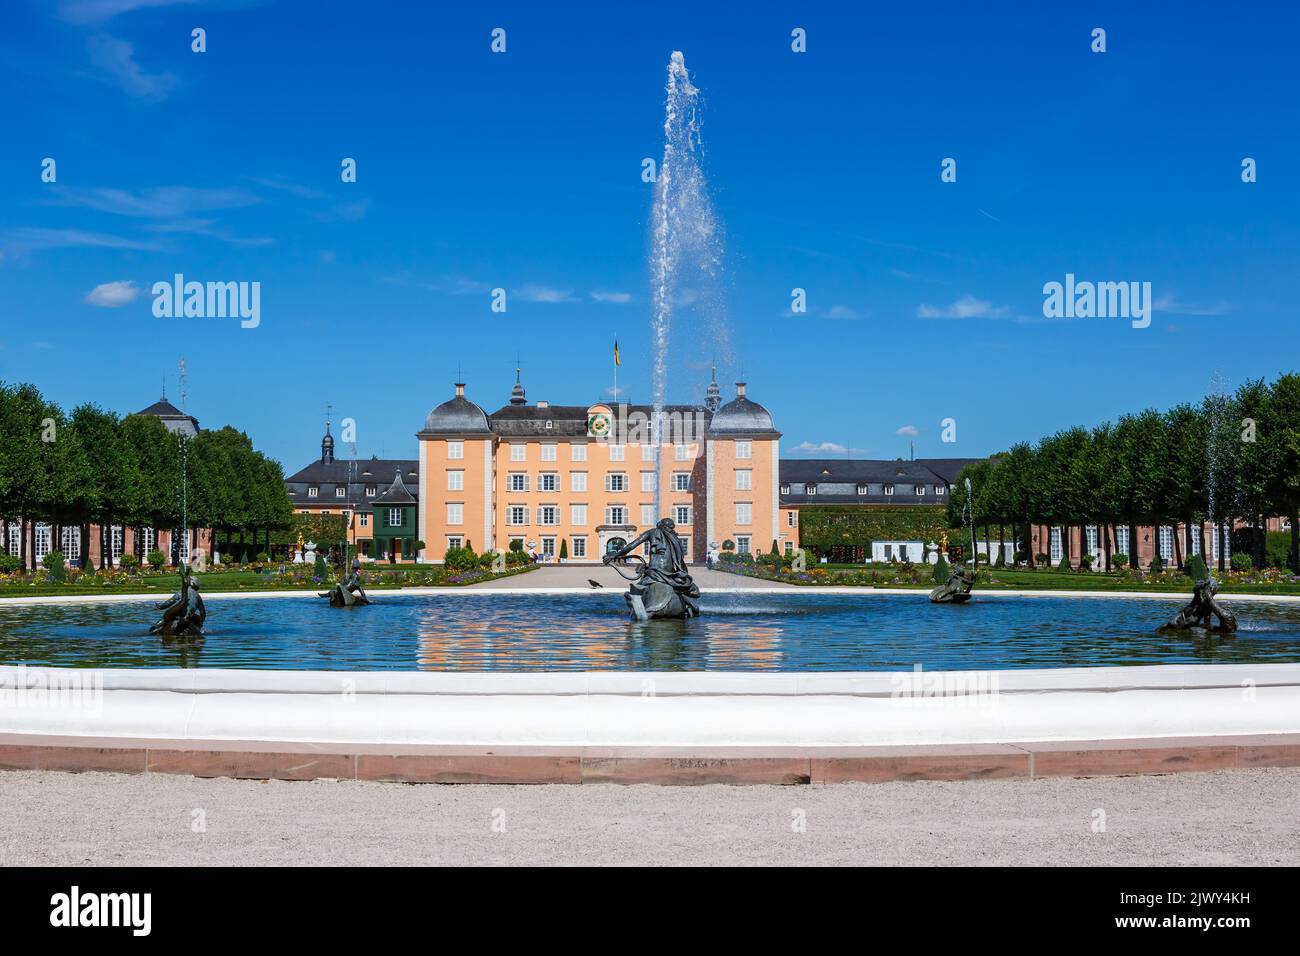 Schwetzingen Castello con fontana in un parco giardino architettura viaggio in Germania Foto Stock